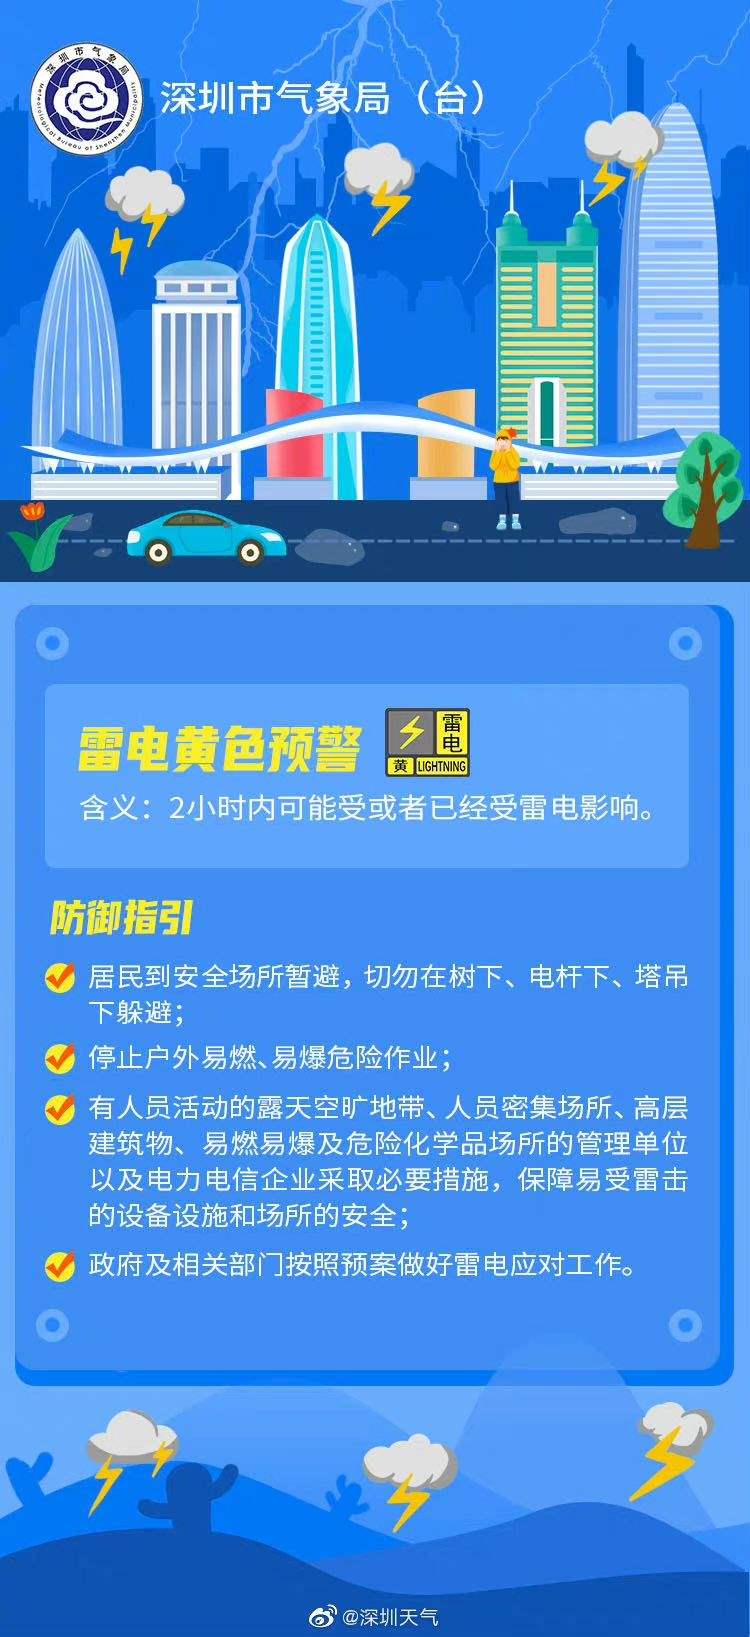 注意防御！深圳发布全市雷电预警